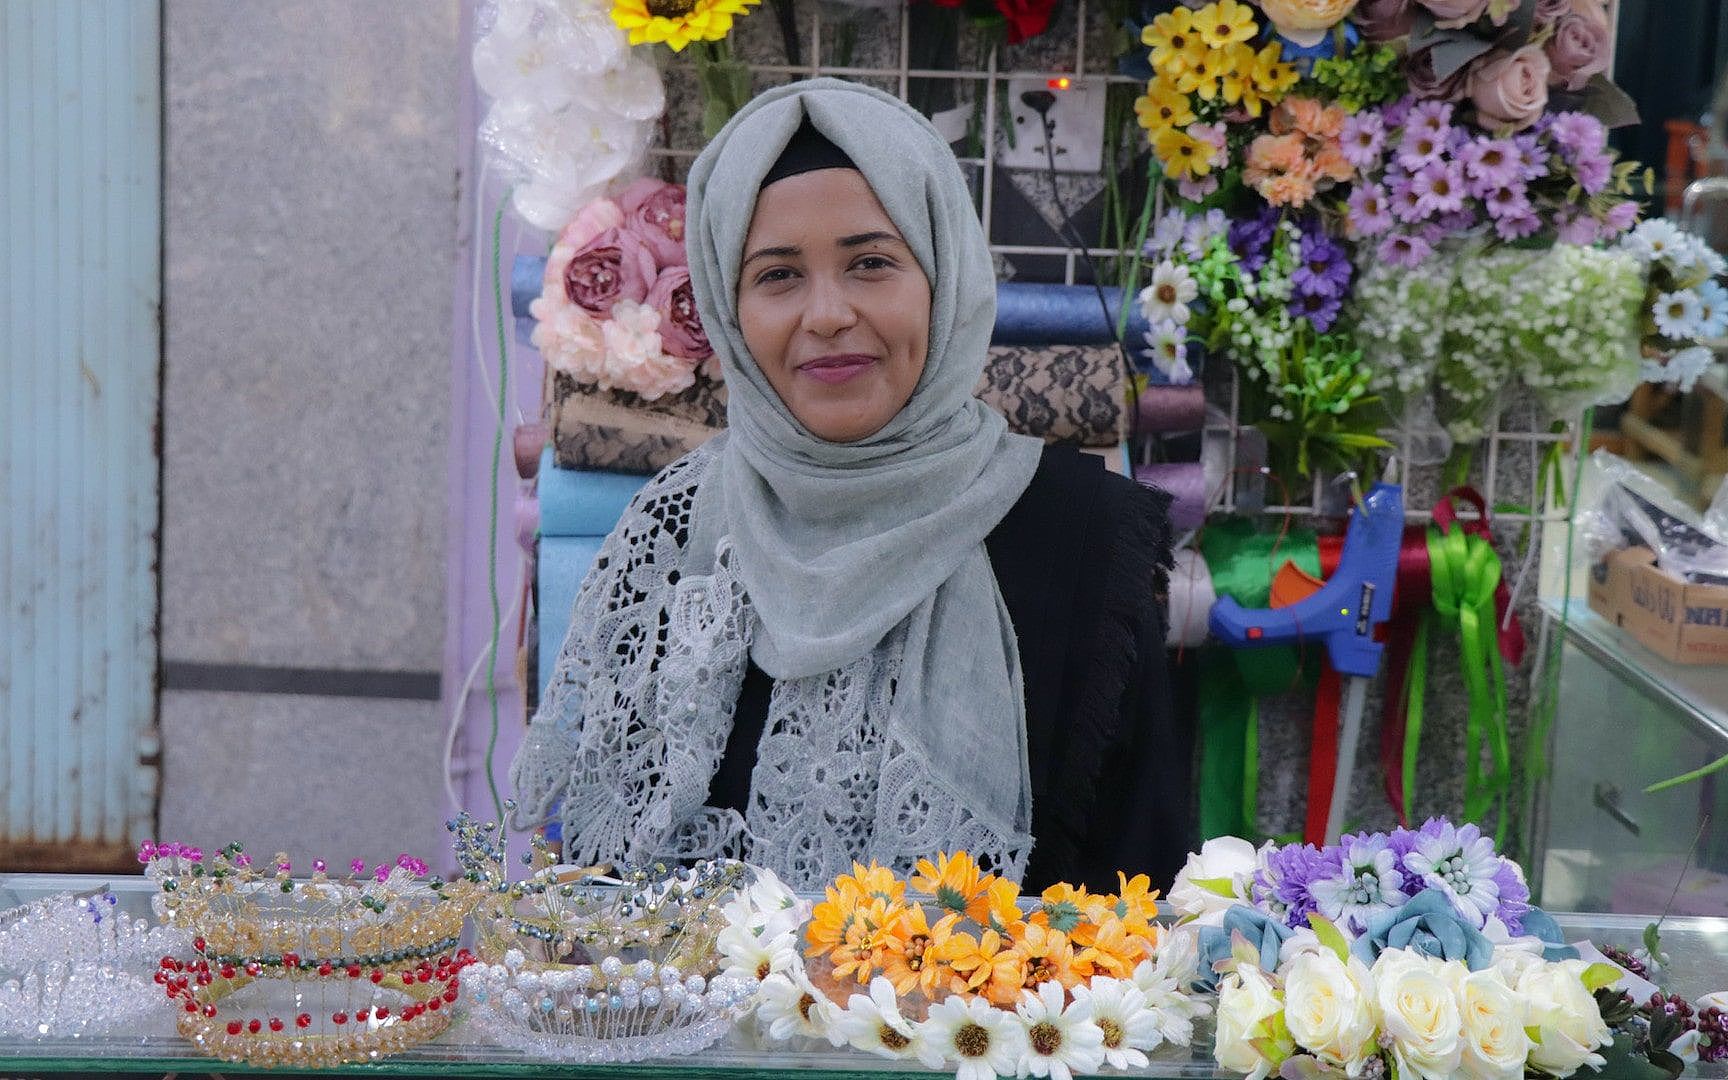 Wafa verkauft selbstgemachte Blumengestecke in ihrem Shop in Aden im Jemen